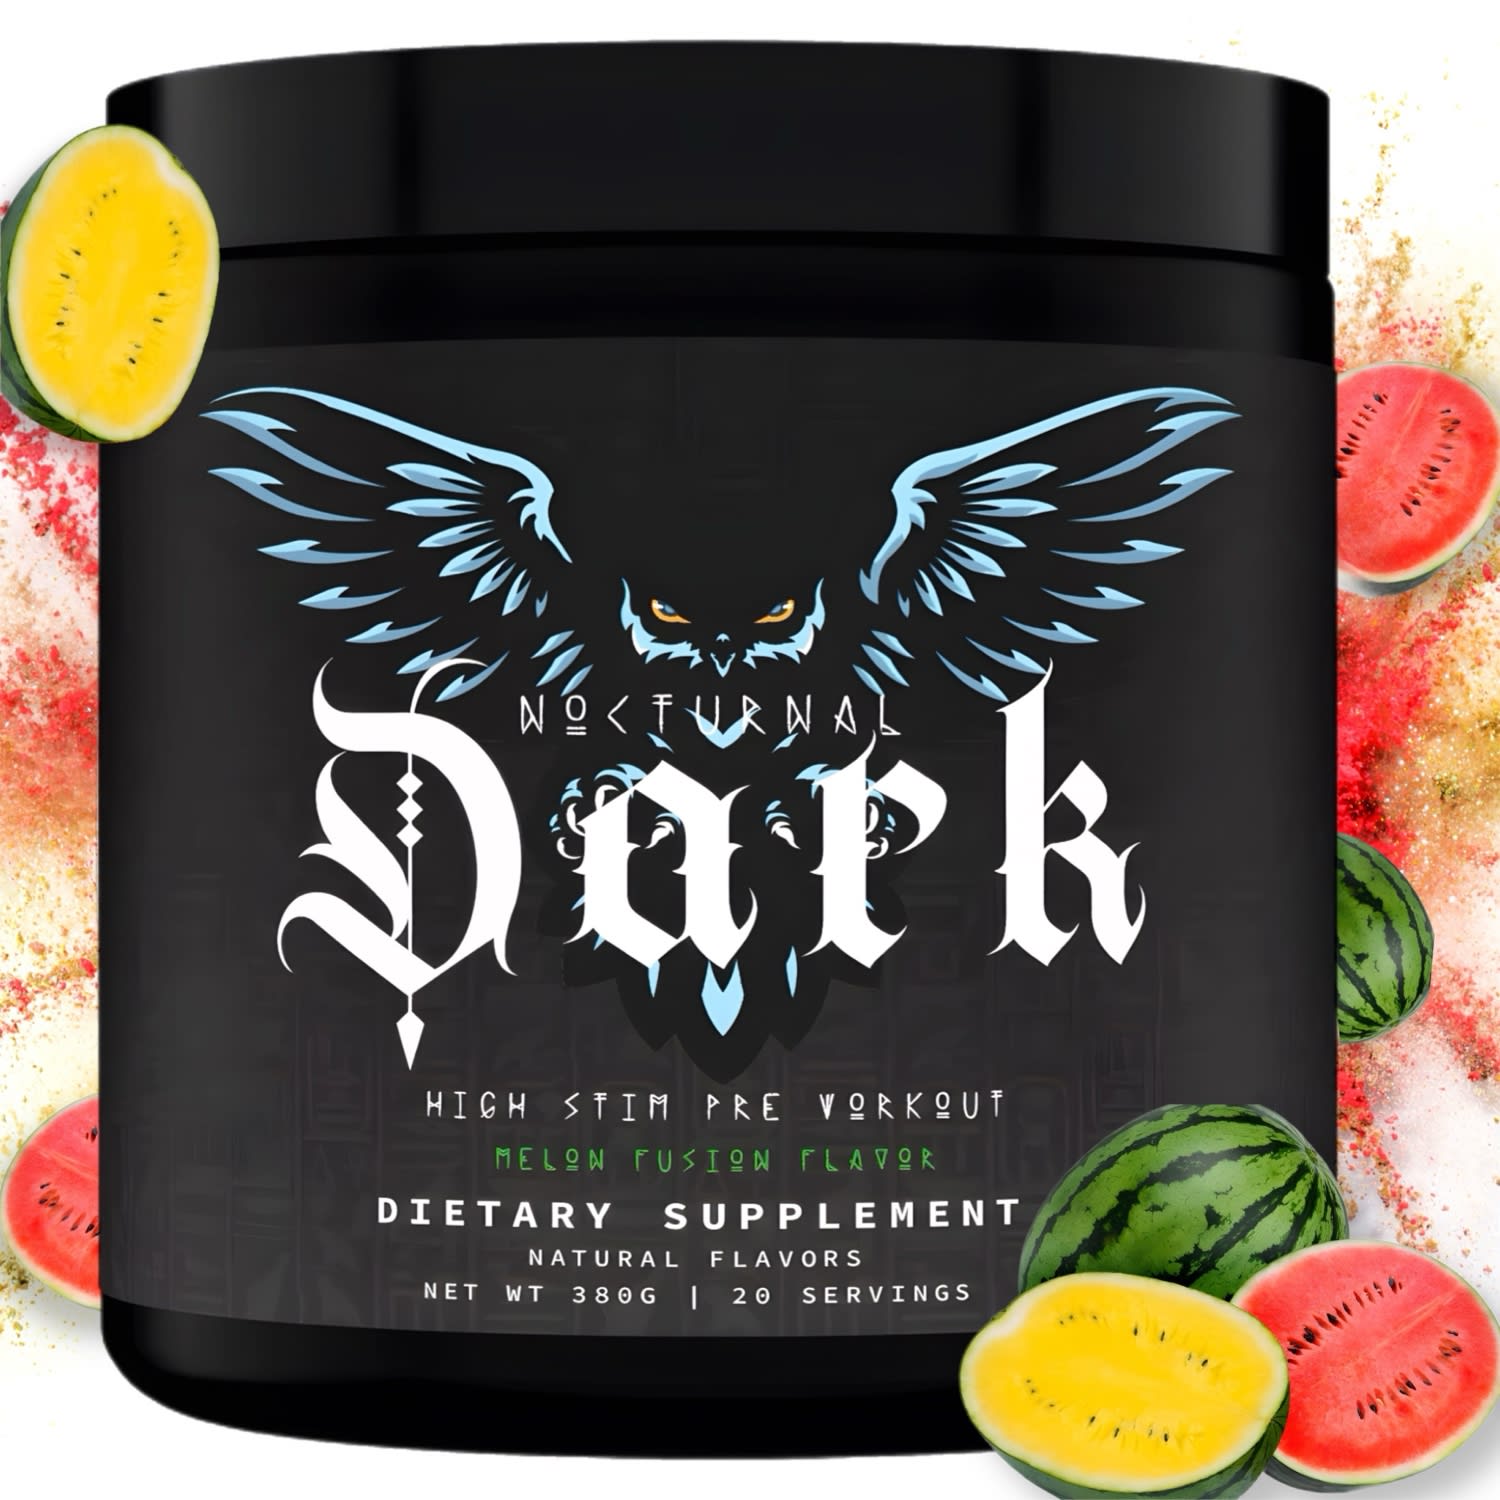 Nocturnal Labz Dark High Stim Pre Workout - Melon Fusion Flavor - Bemoxie Supplements